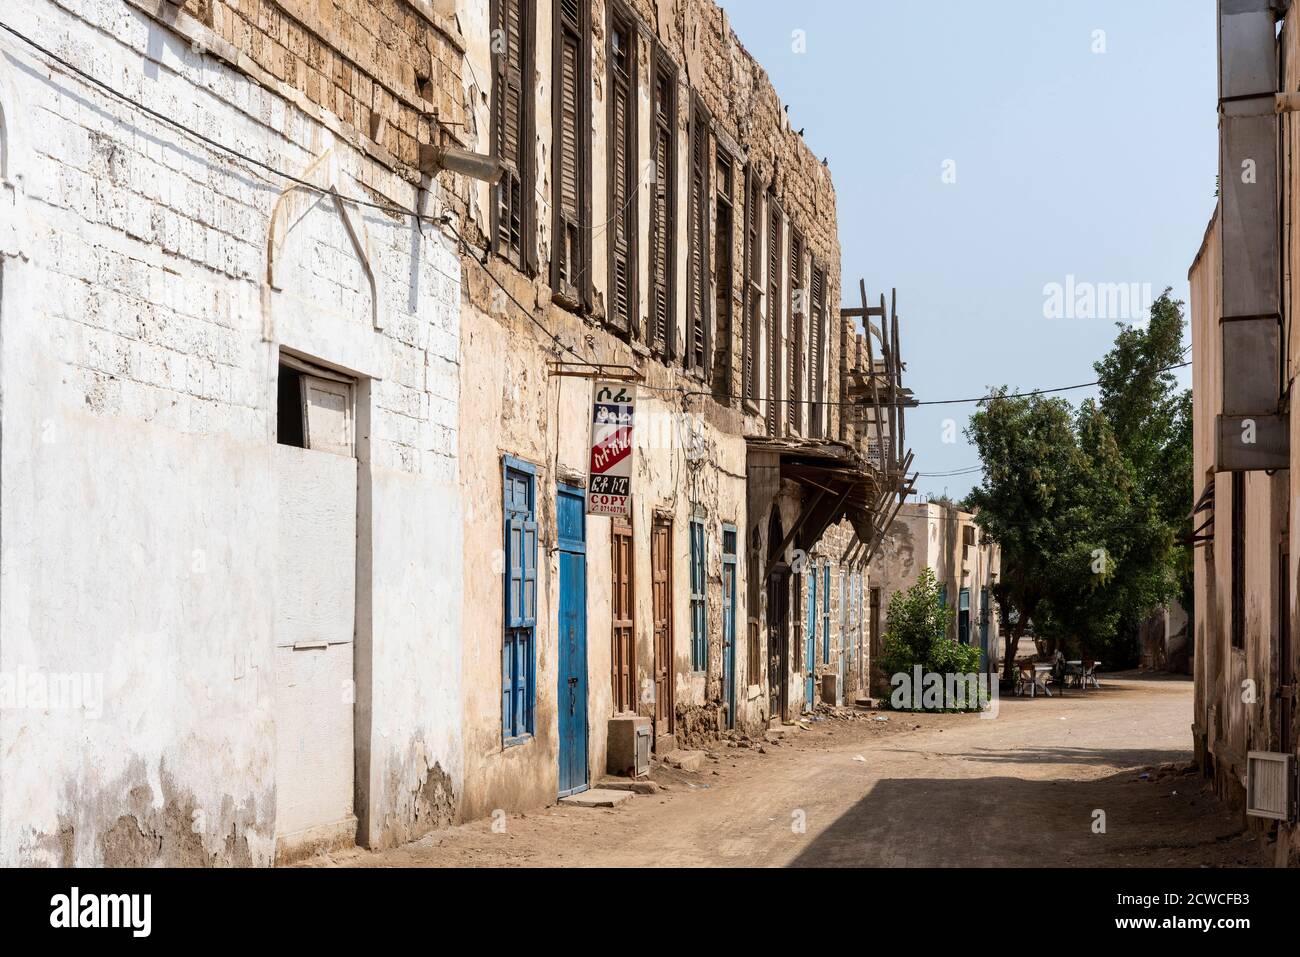 Straßenszene in Massawa. Einige der mit Korallen erbauten Gebäude sind rendert worden. Massawa - Stadtporträt, Massawa, Eritrea. Architekt: Verschiedene, 20 Stockfoto